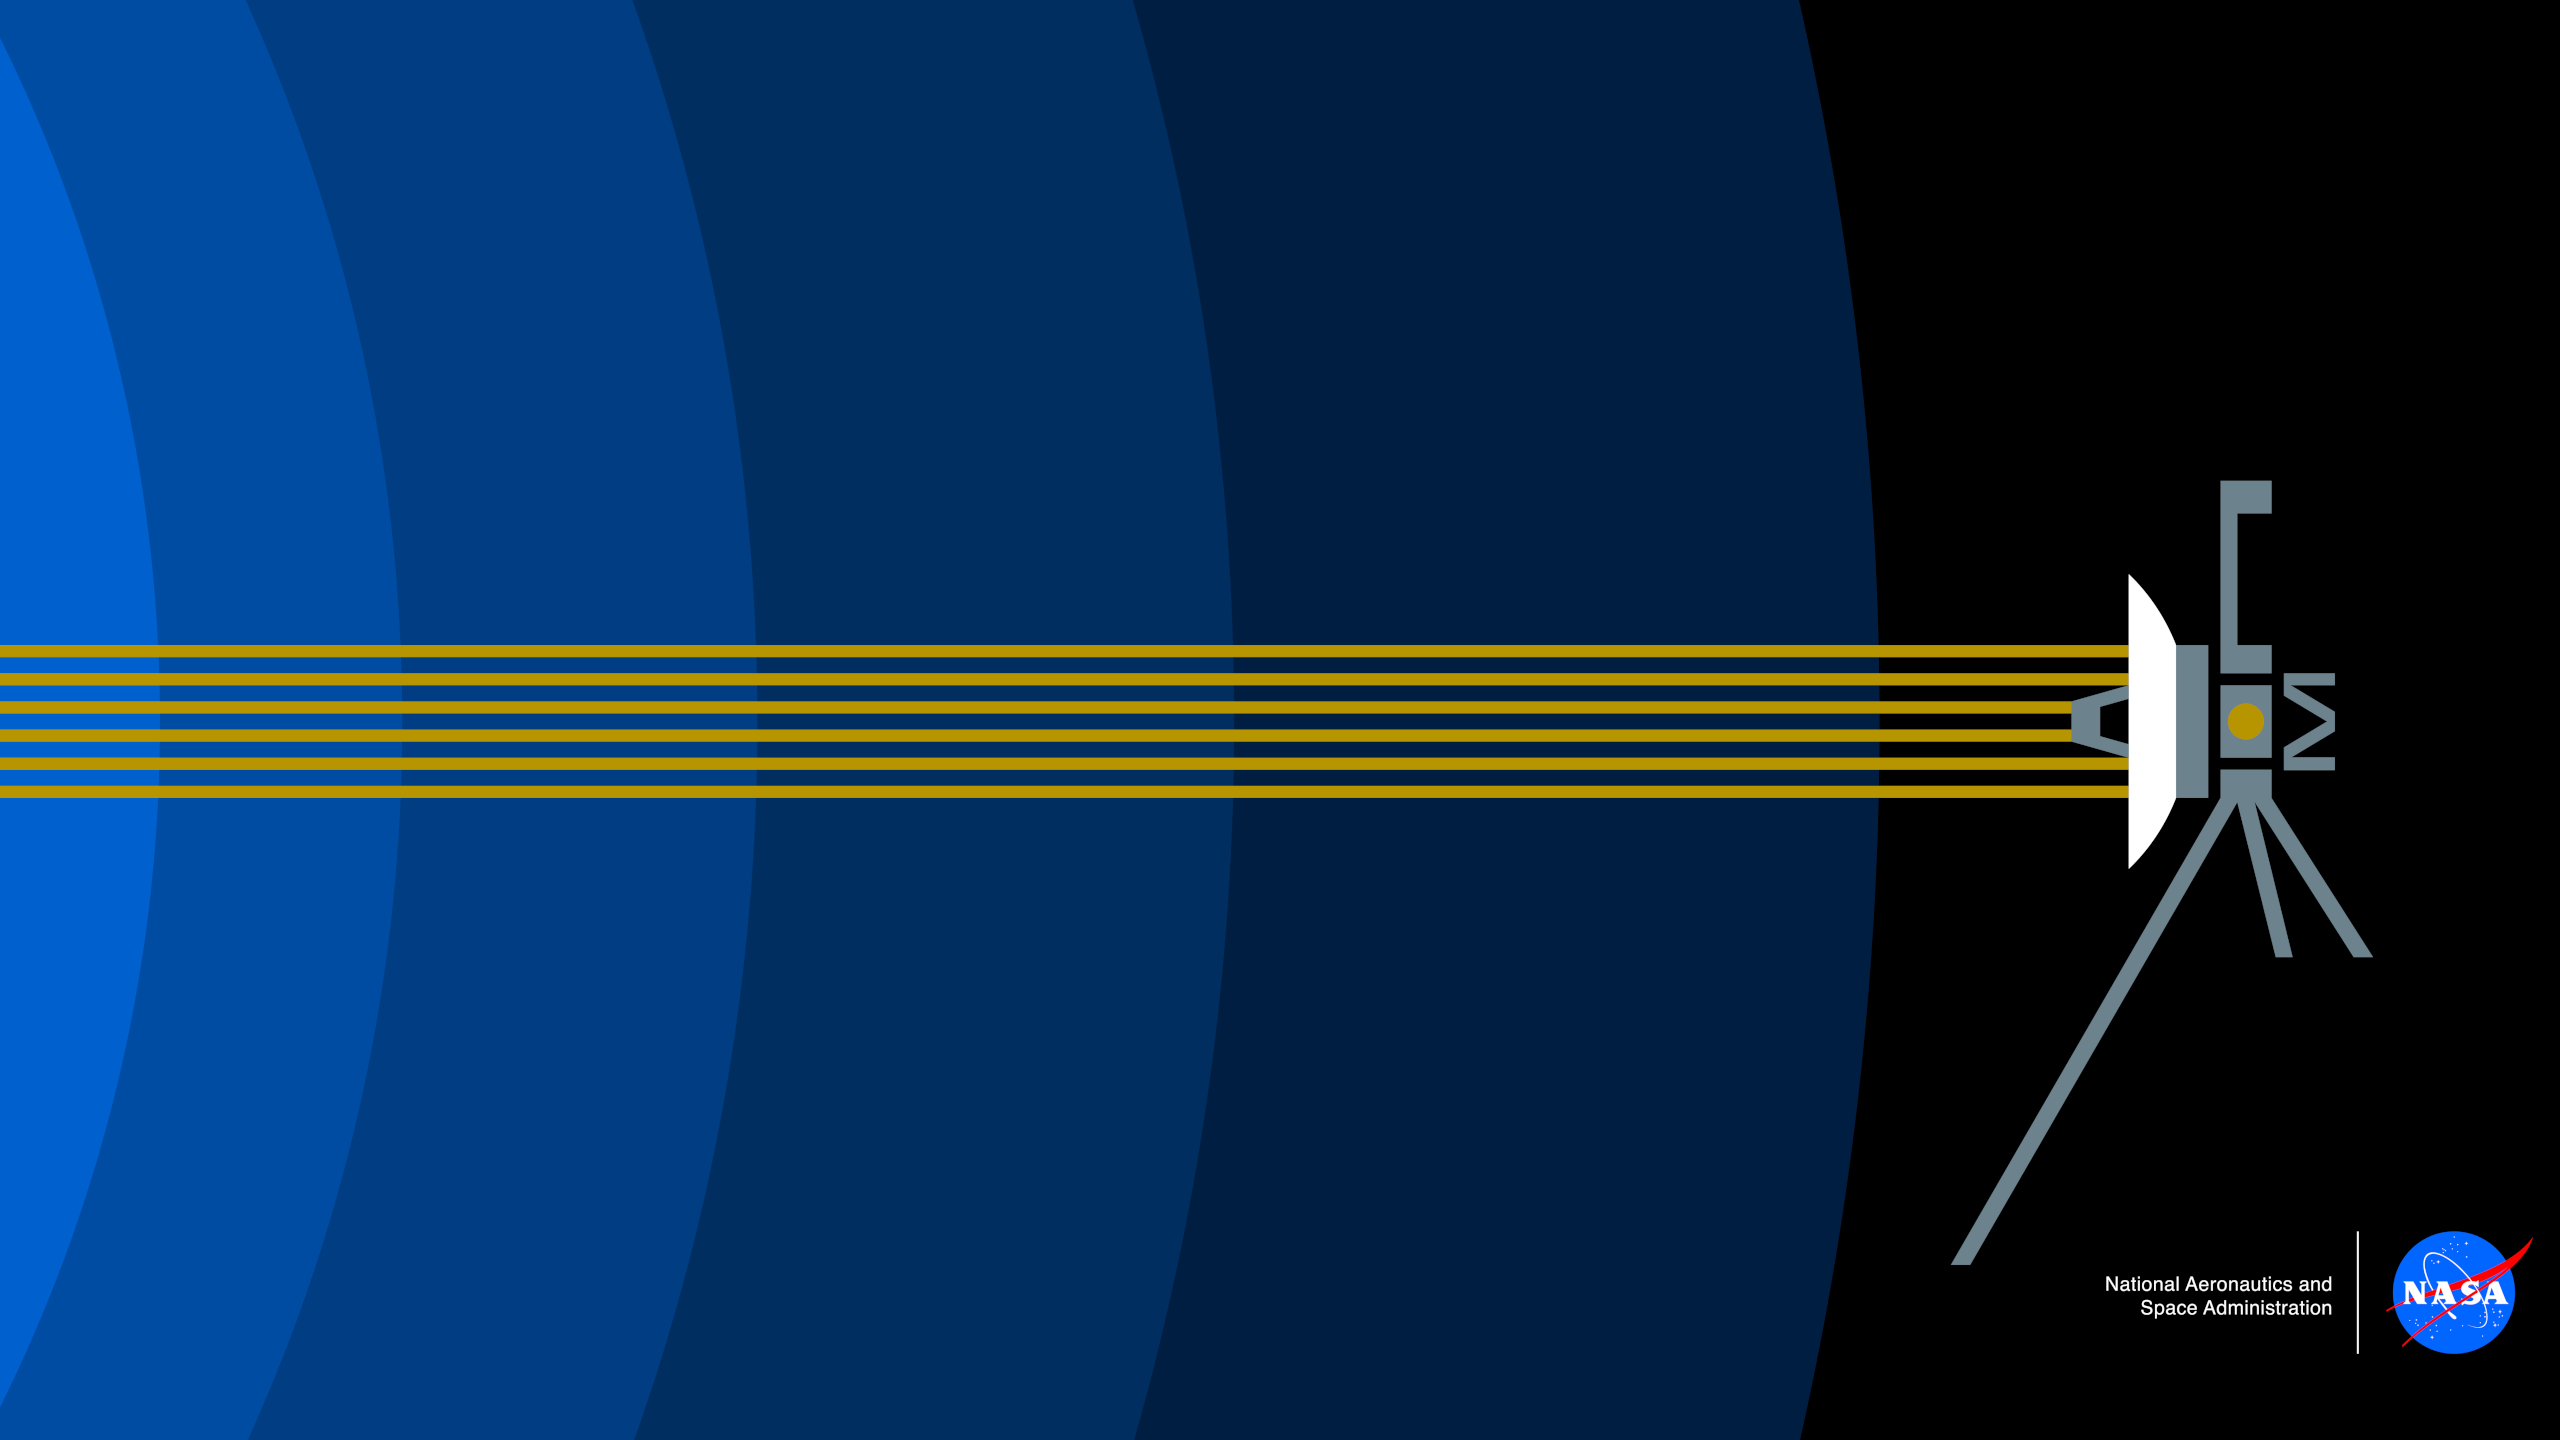 General 2560x1440 NASA Voyager heliosphere minimalism satellite spaceship digital art